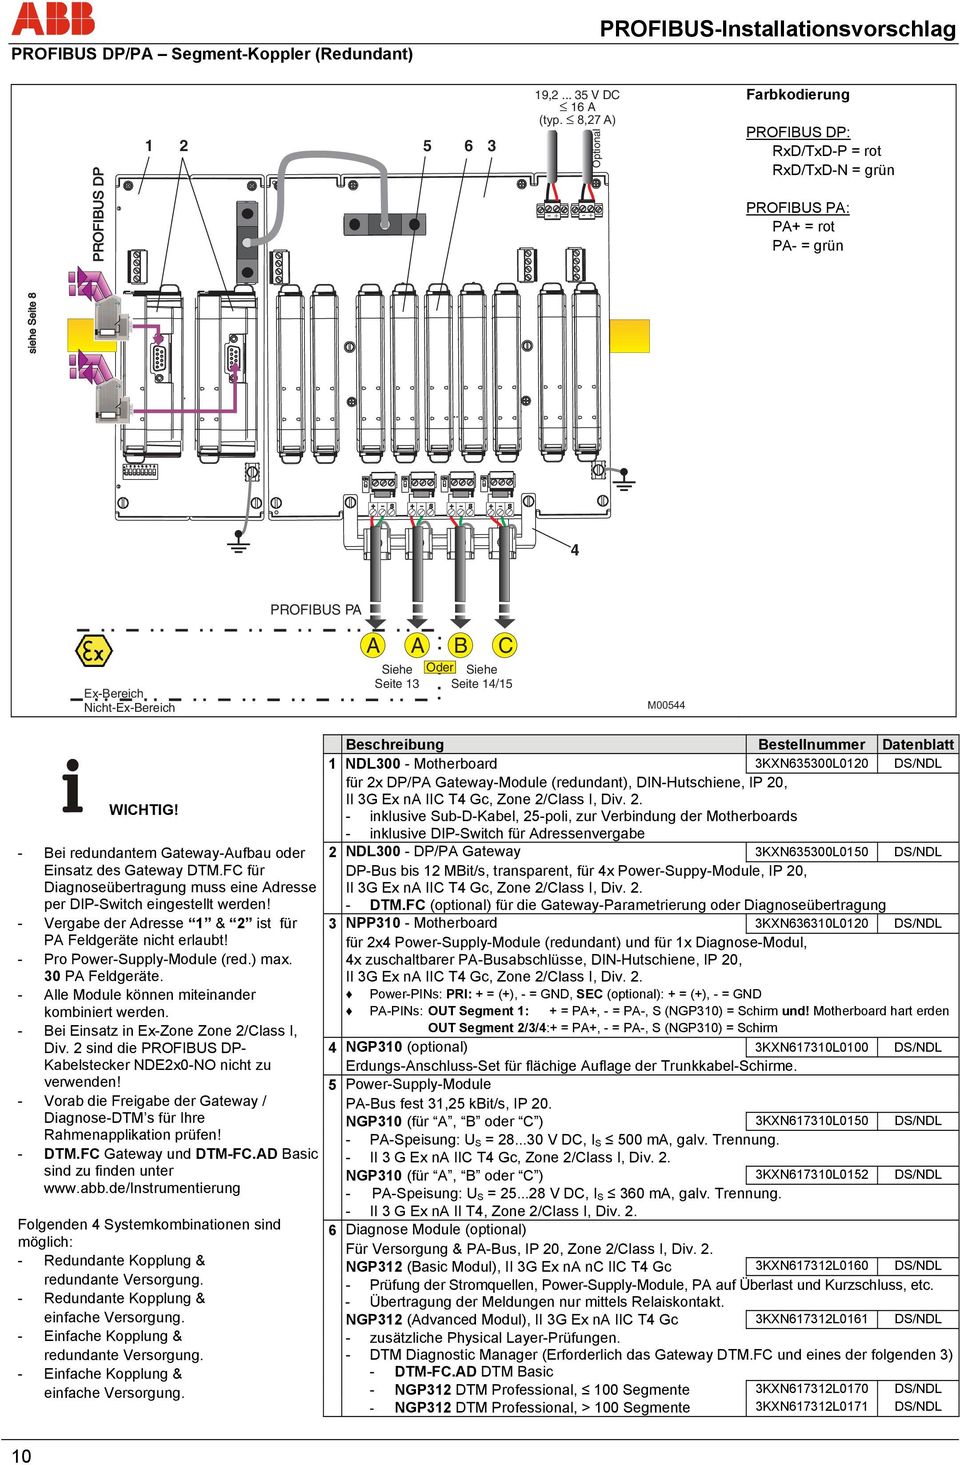 C Siehe Seite 14/15 M00544 WICHTIG! - ei redundantem Gateway-ufbau oder Einsatz des Gateway DTM.FC für Diagnoseübertragung muss eine dresse per DIP-Switch eingestellt werden!